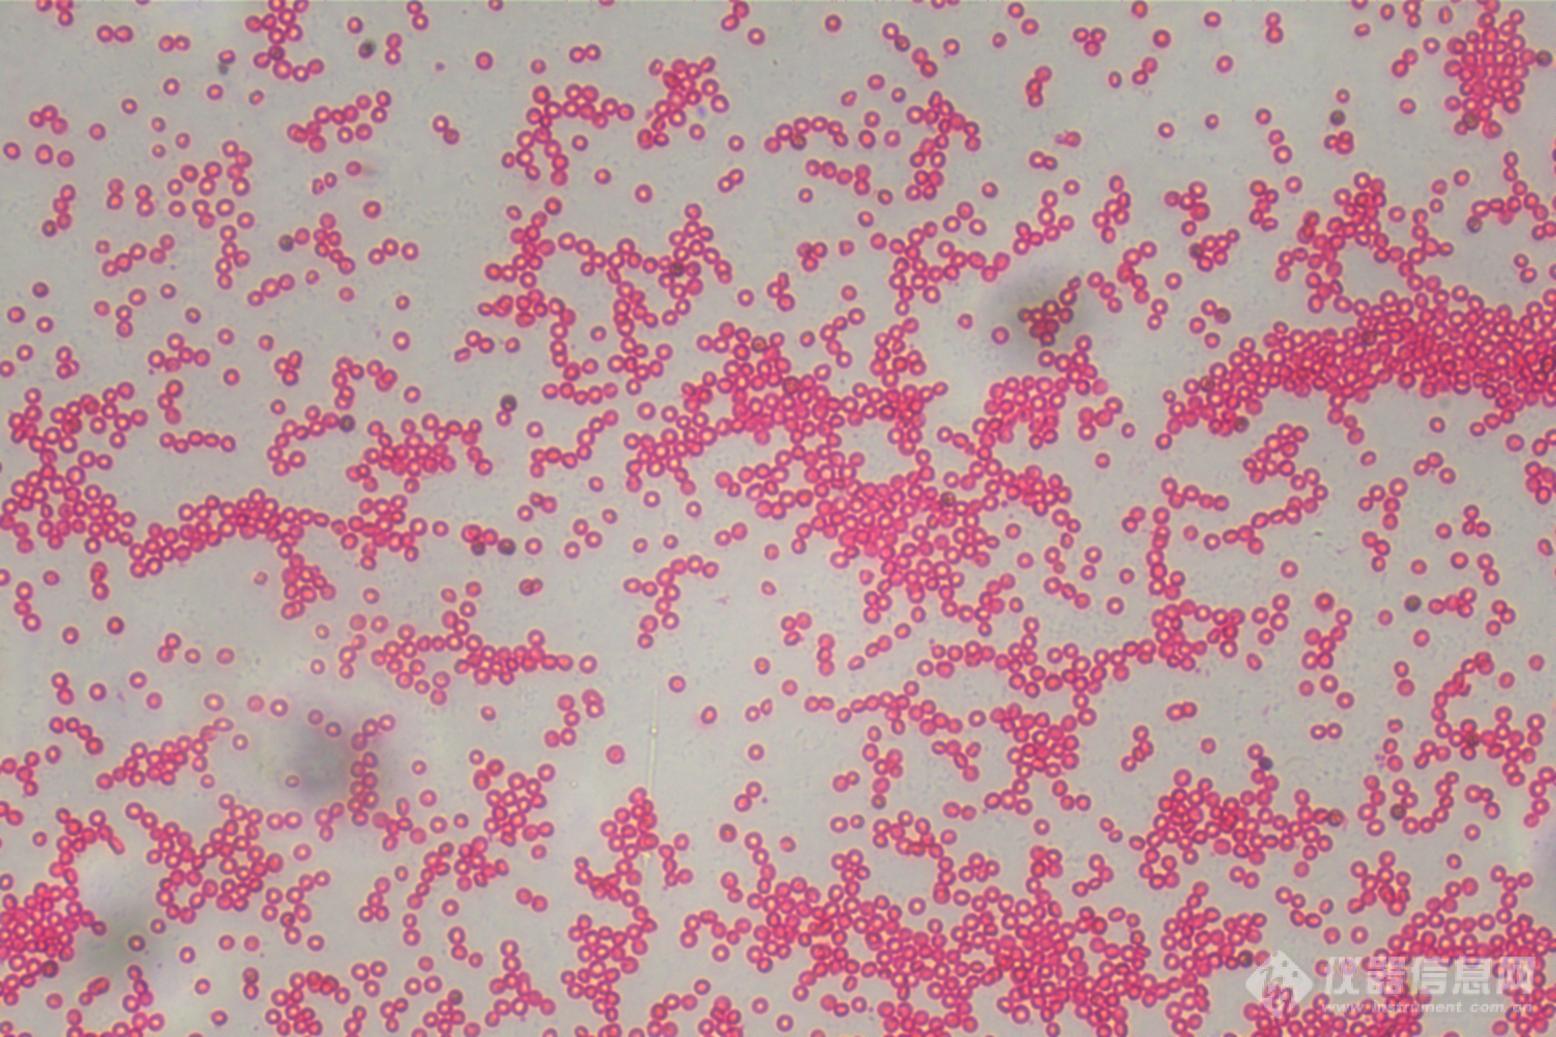 01_倒置显微镜下的红细胞.jpg